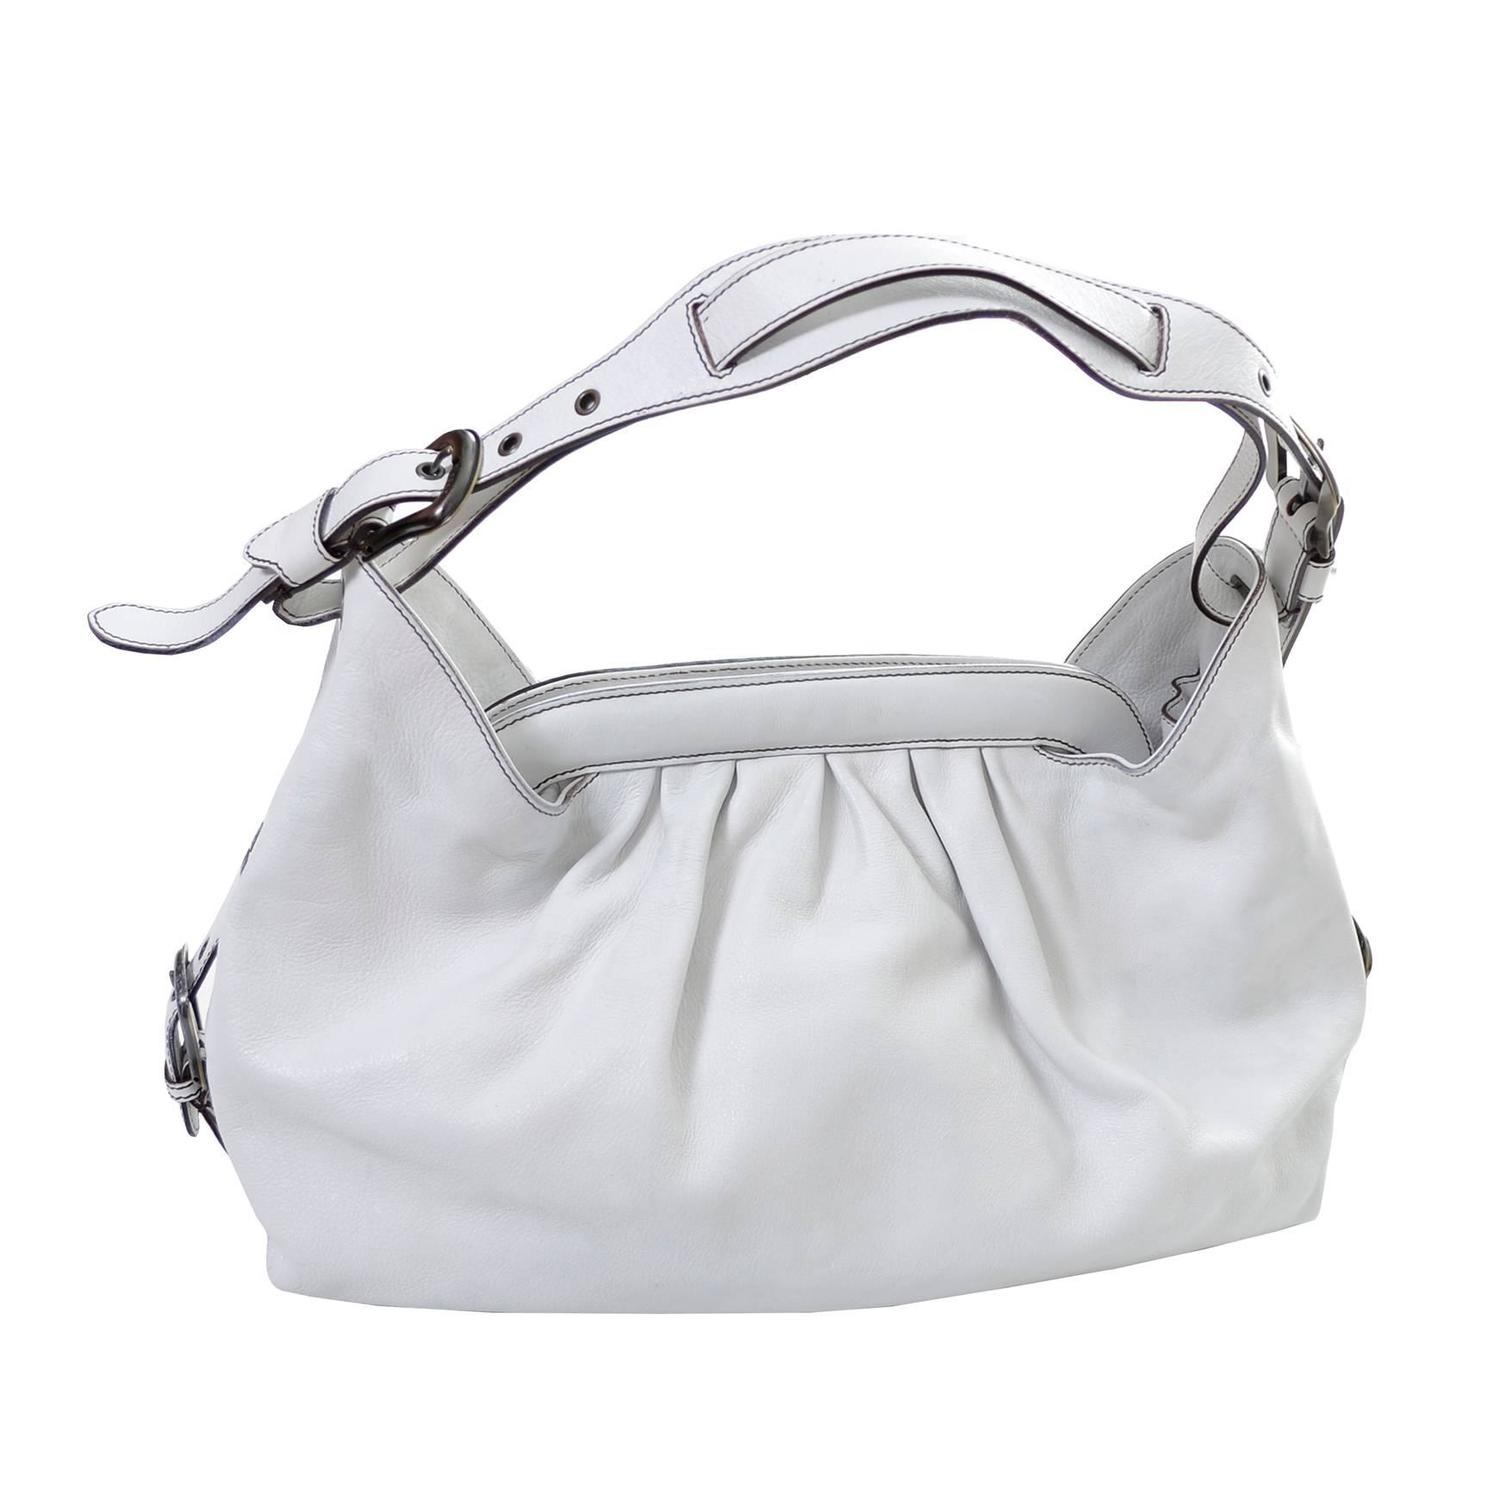 Fendi Borsa Bag White Leather Doctor Hobo Handbag For Sale at 1stdibs